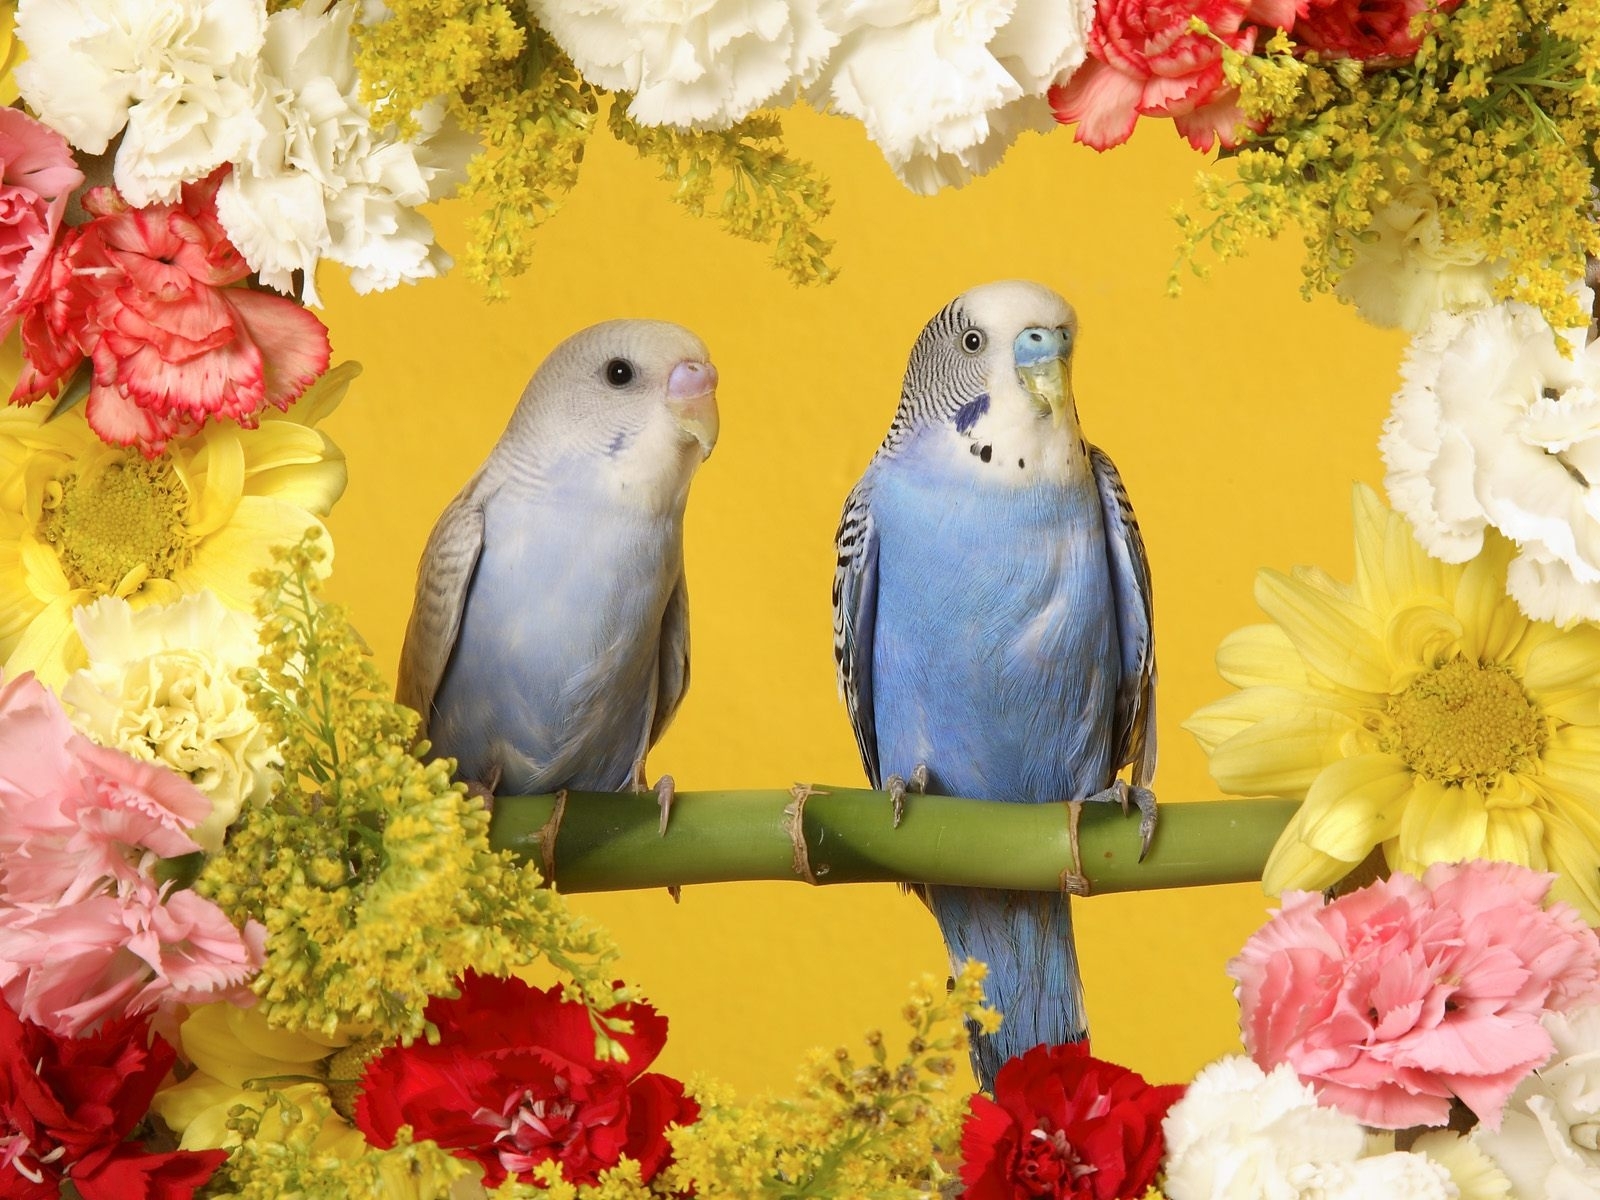 Скачать обои бесплатно Попугаи, Животные, Птицы, Цветы картинка на рабочий стол ПК